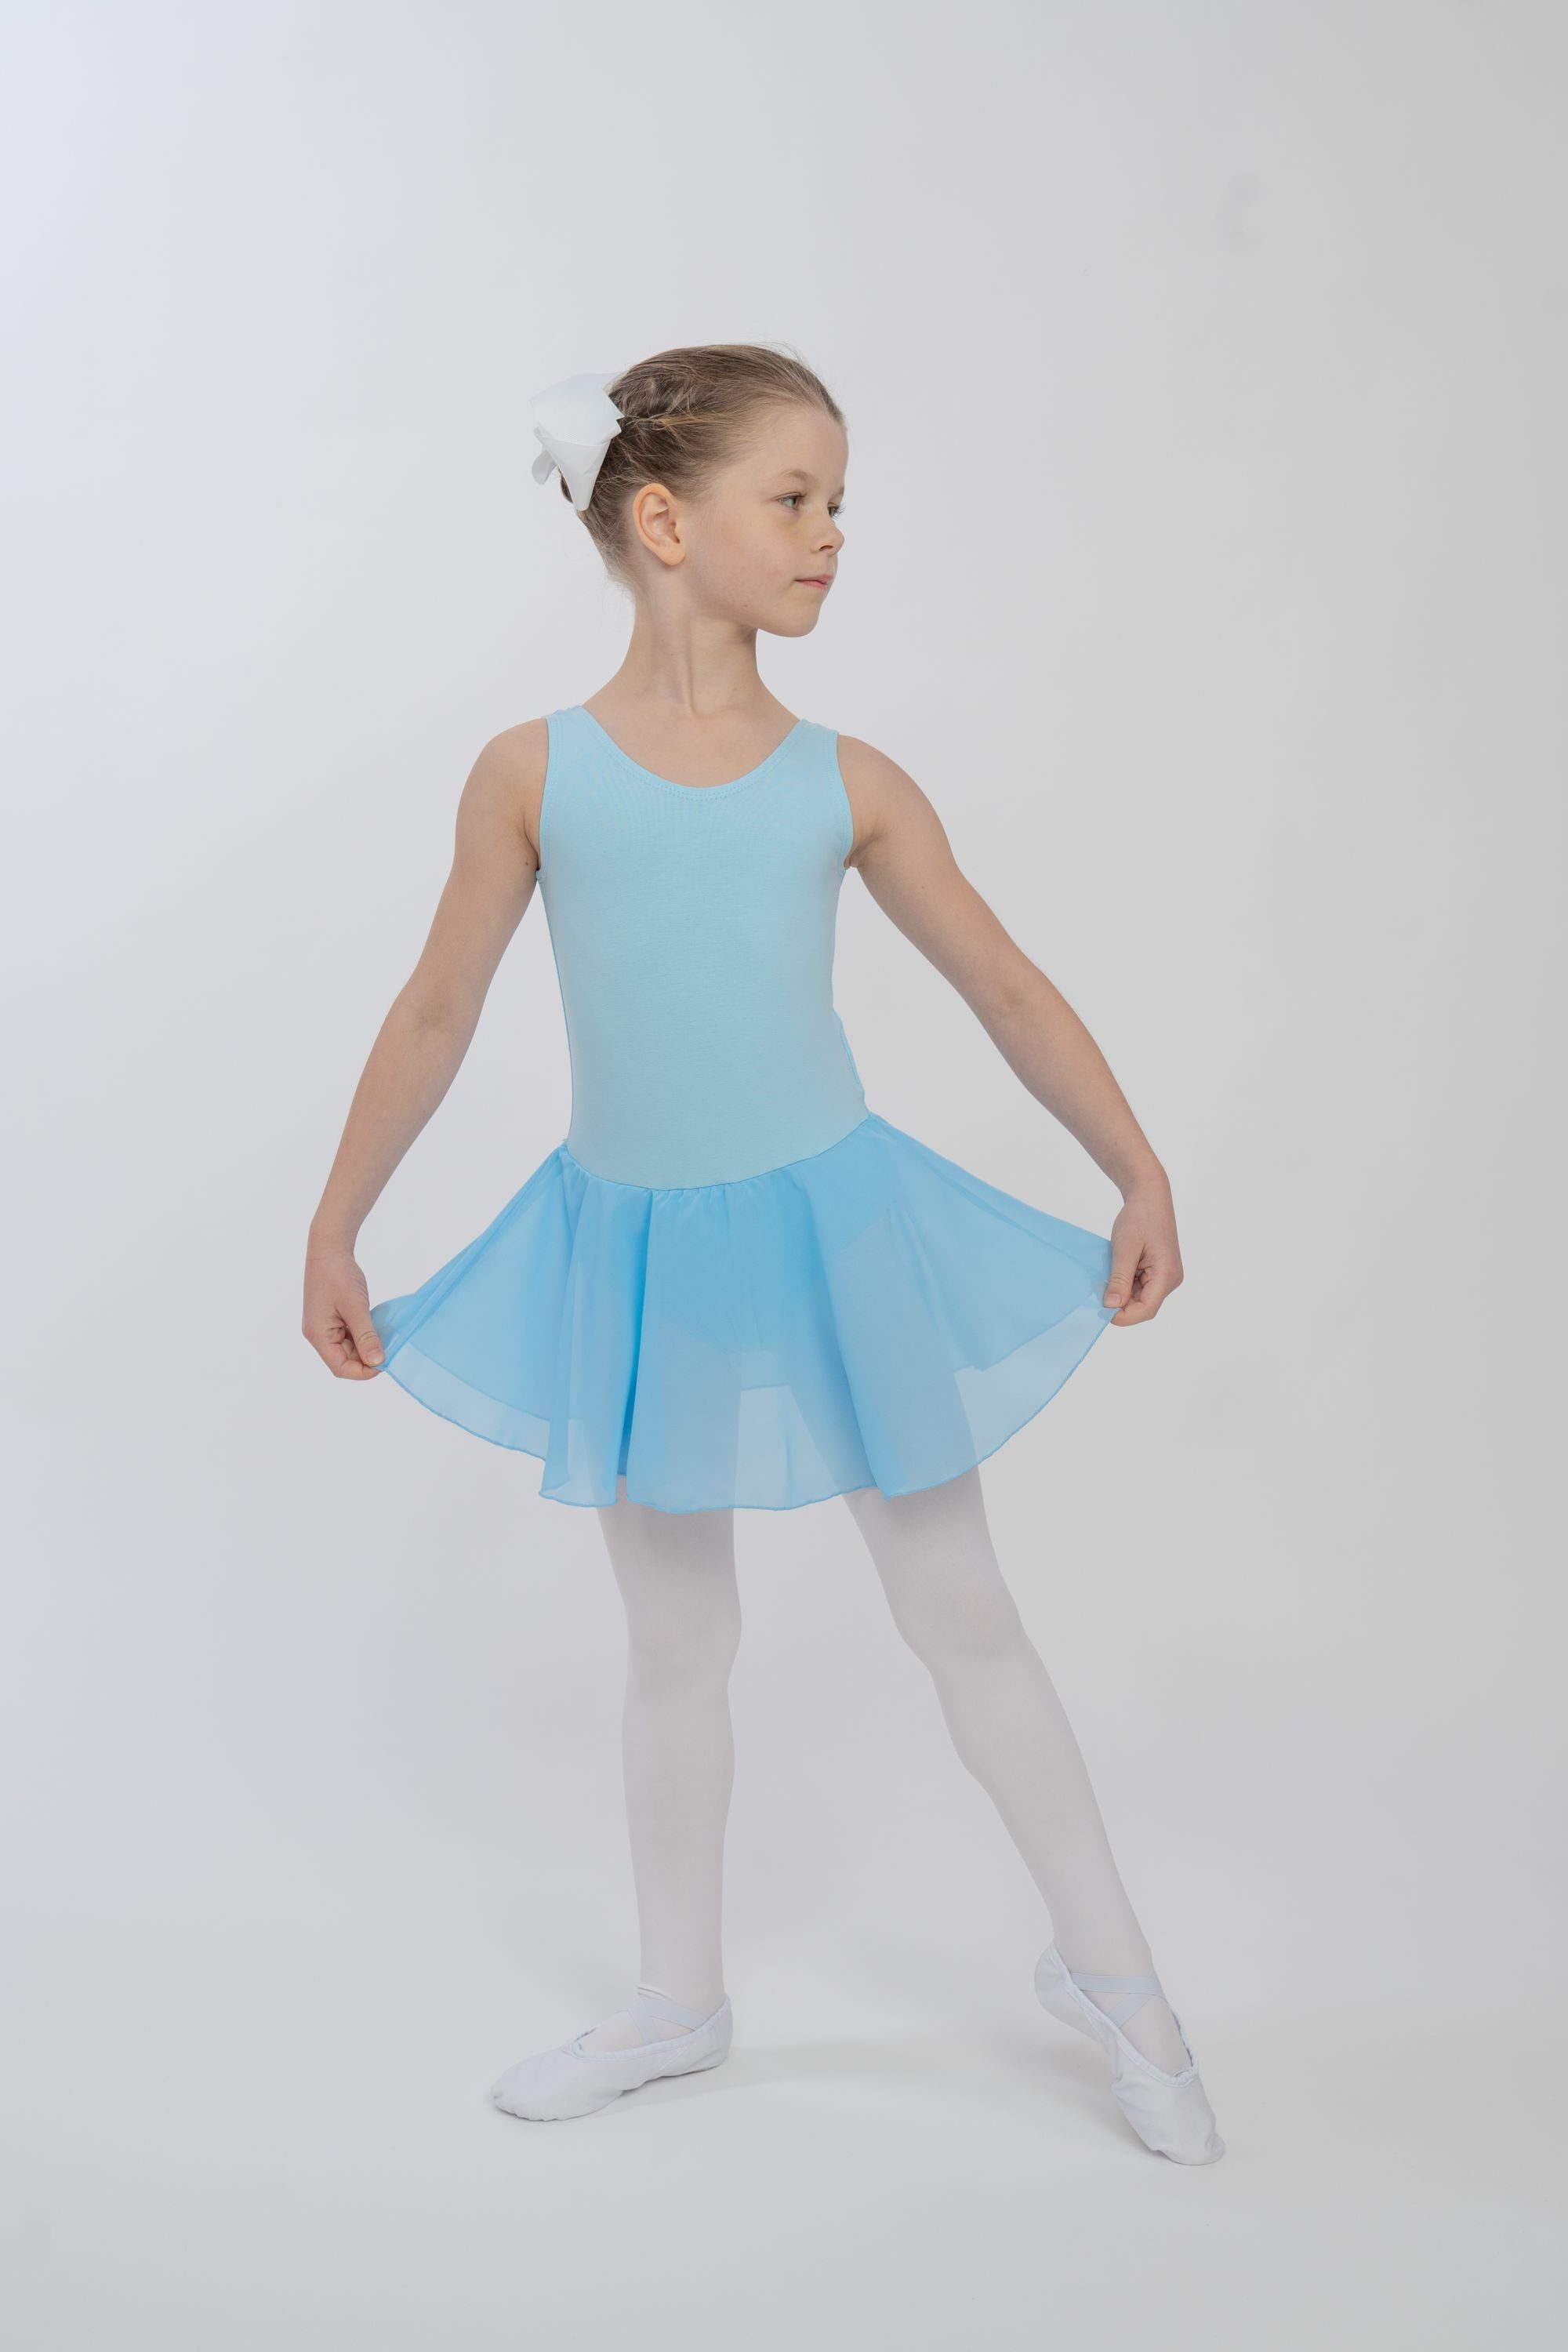 tanzmuster Chiffonkleid Ballettkleid Bella Schlüssellochausschnitt weicher Baumwolle Mädchen Ballett fürs aus für mit Kinder hellblau Ballettbody